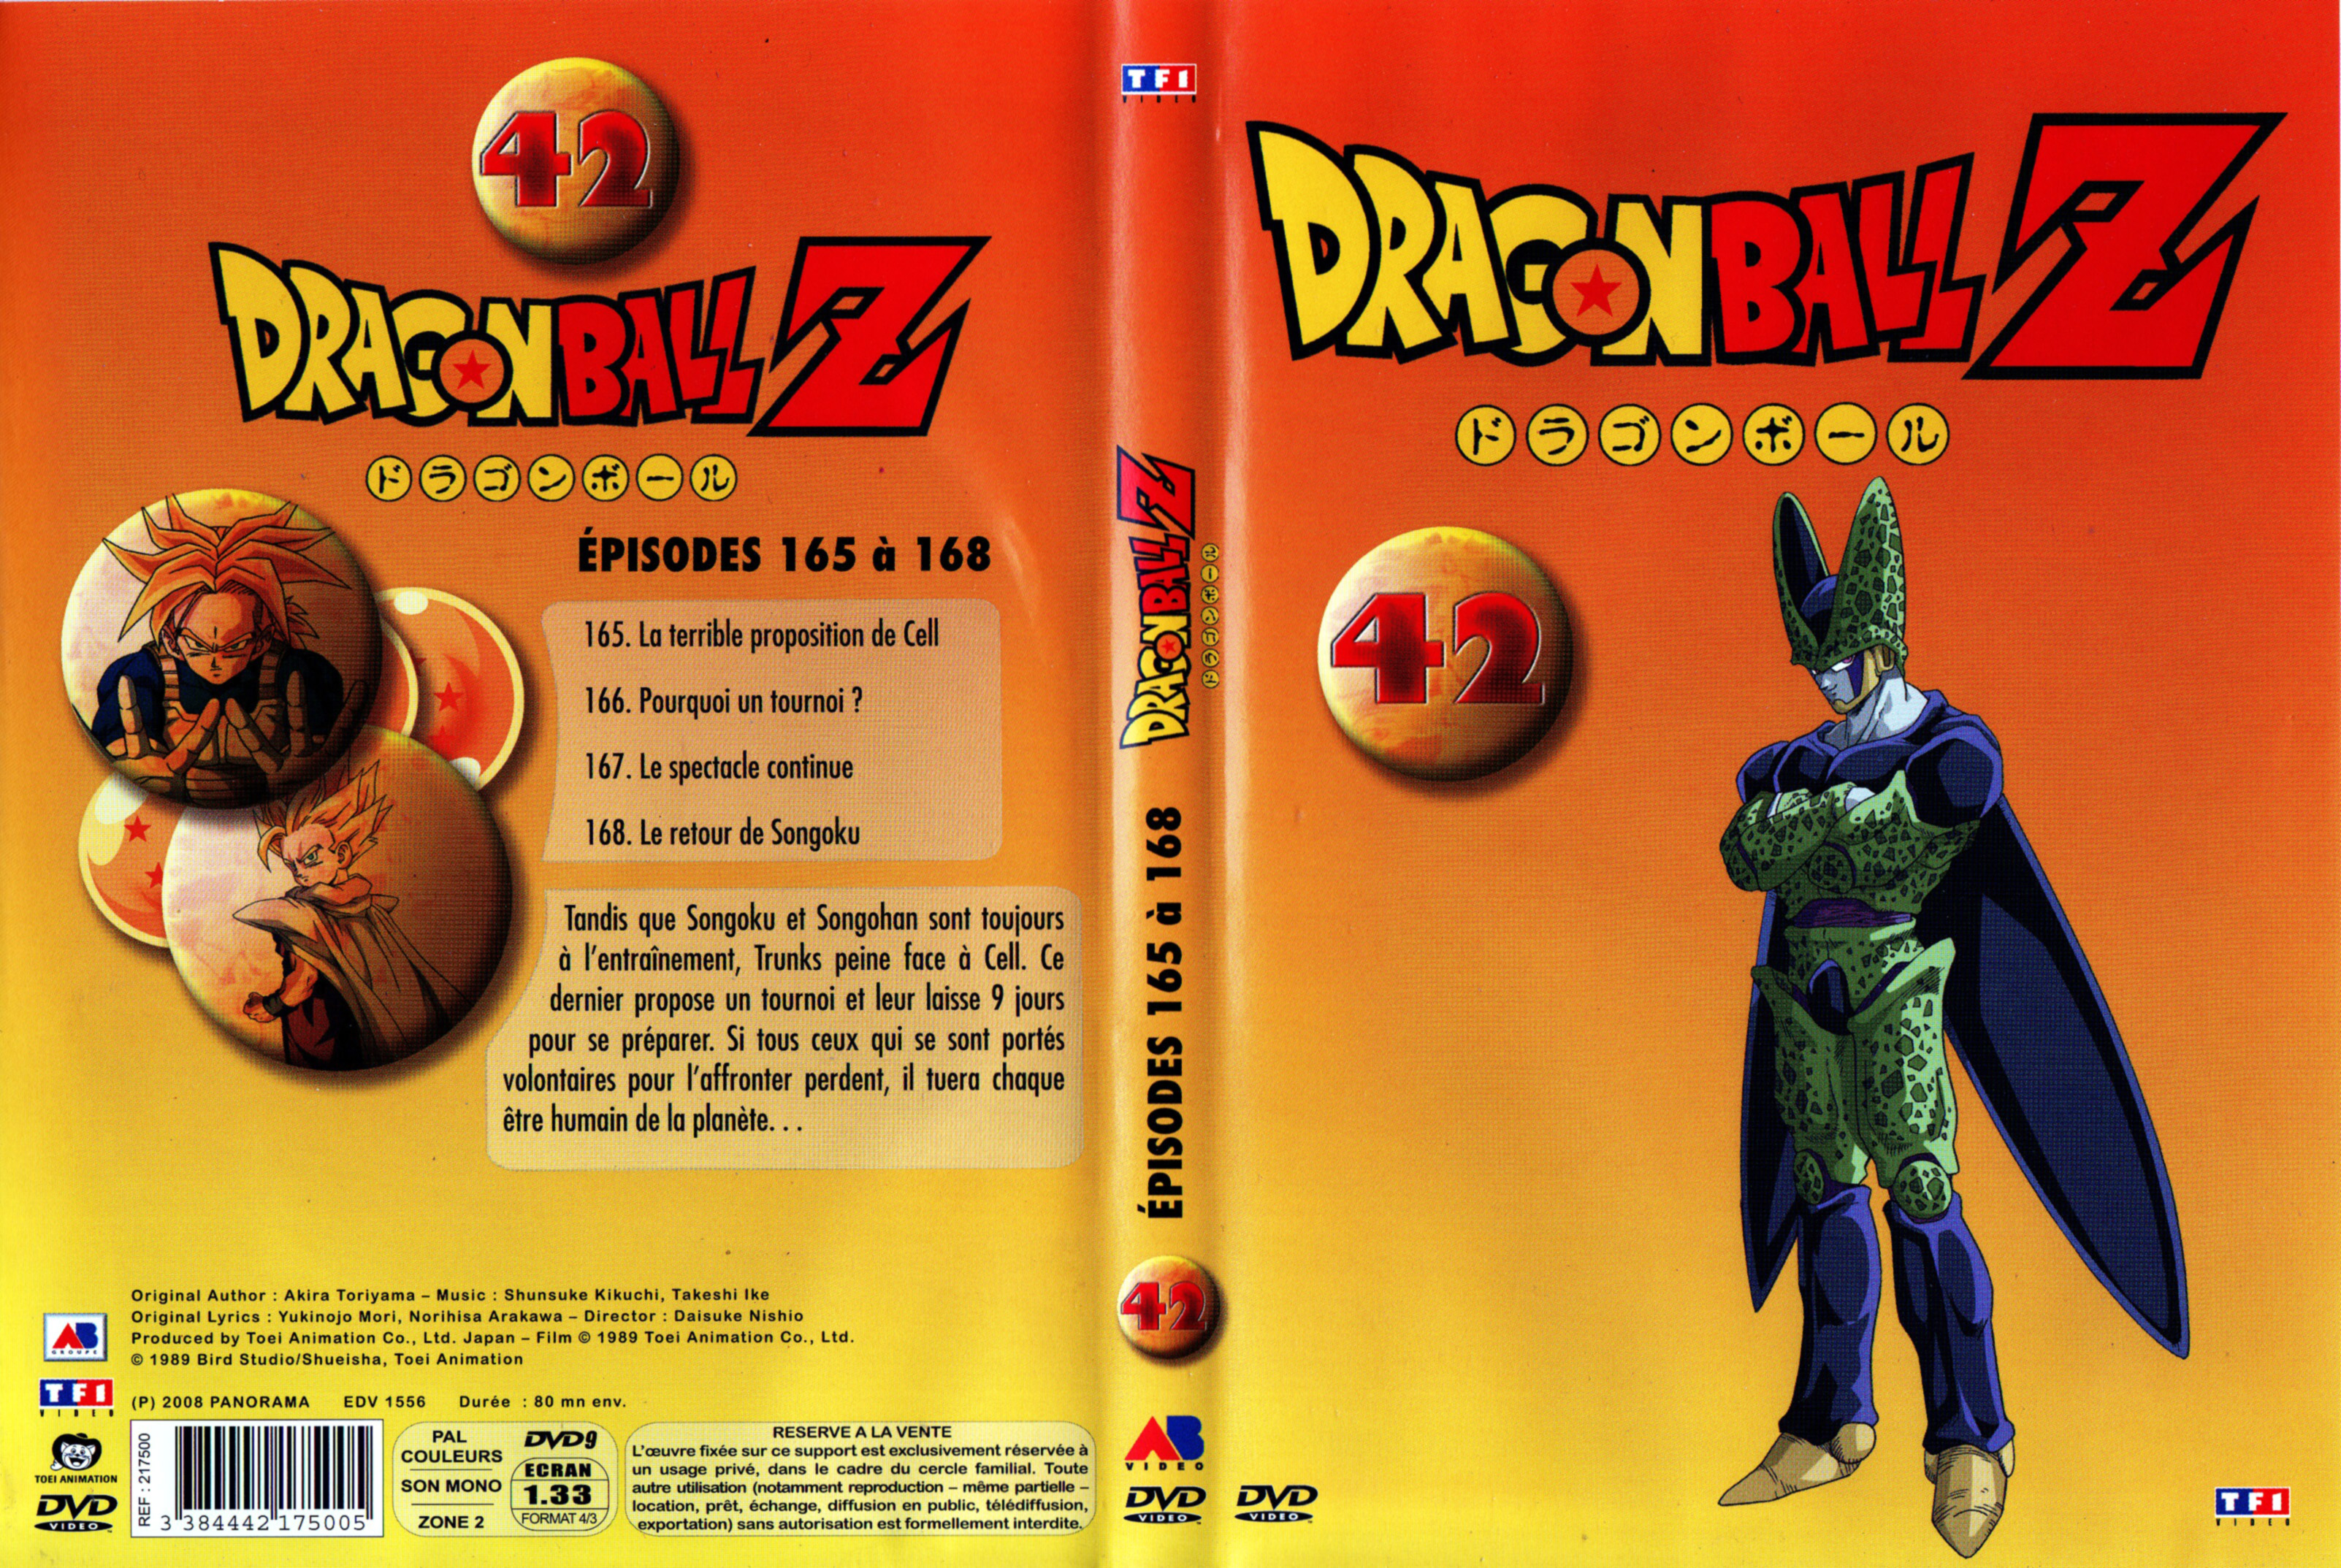 Jaquette DVD Dragon Ball Z vol 42 v2